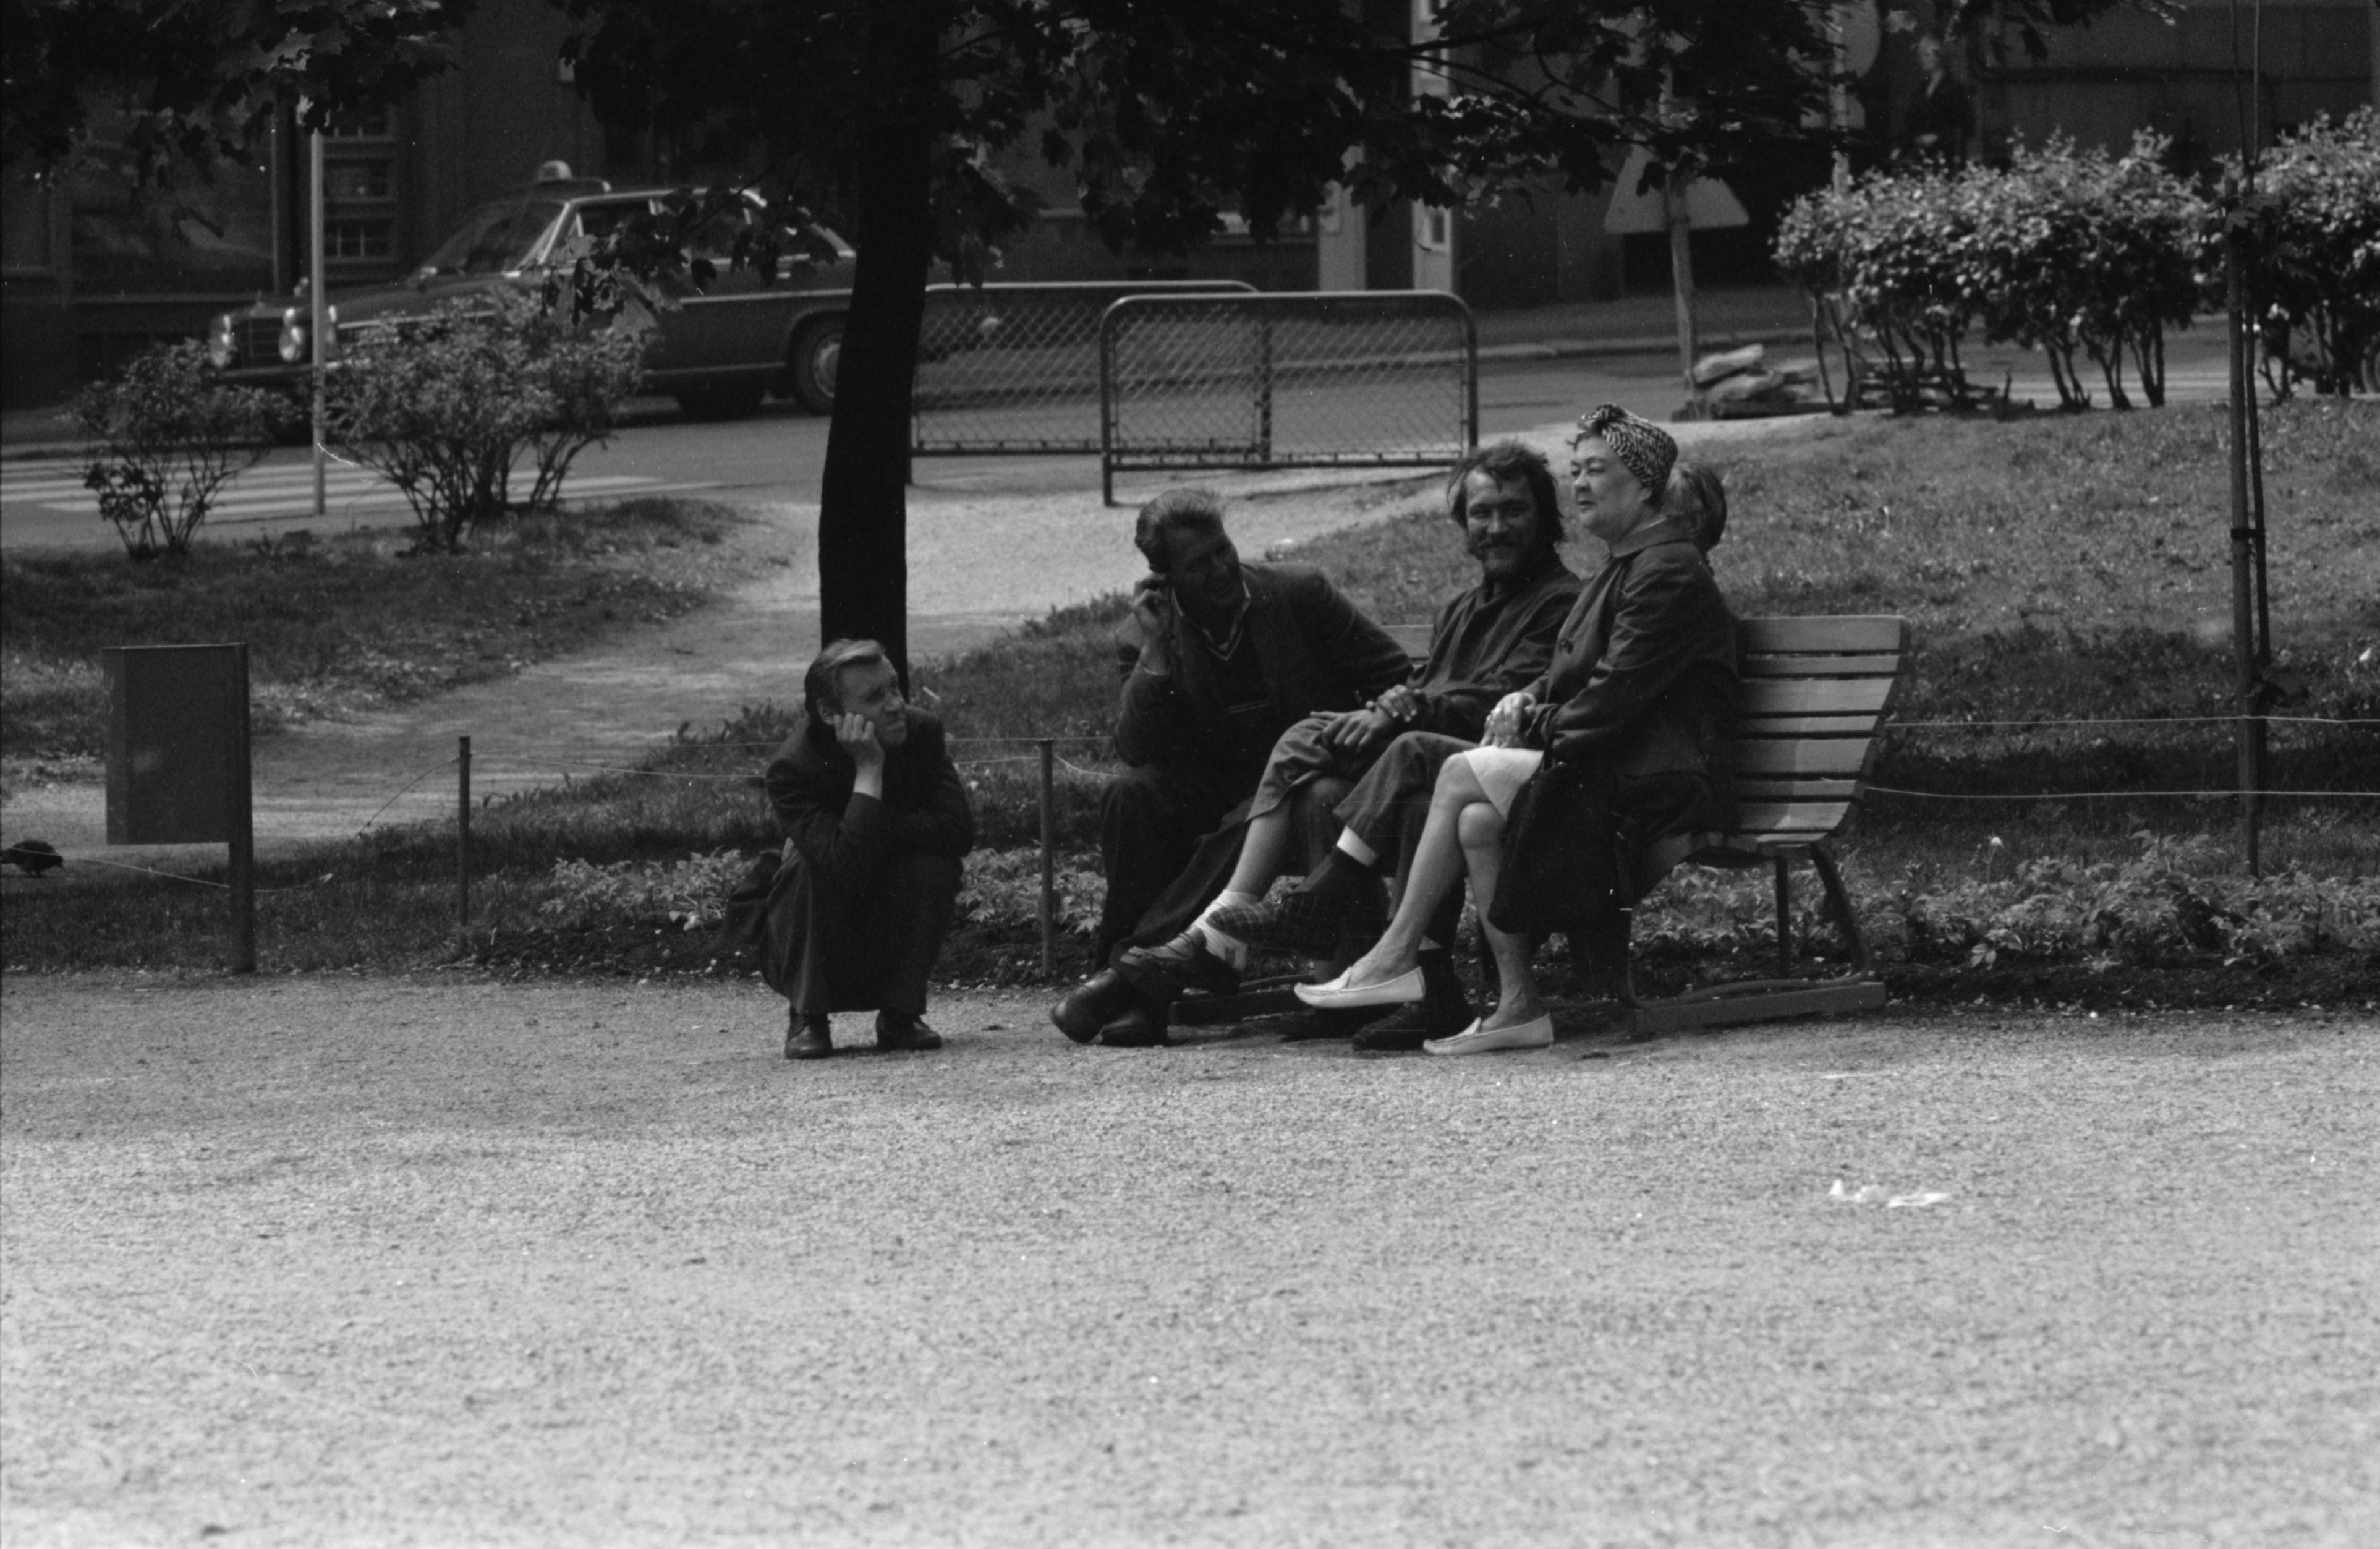 Liisanpuistikko. Ihmisiä, puistojen miehiä, yksi kyykyssä vieressä, ja nainen istumassa penkillä Liisanpuistikossa.